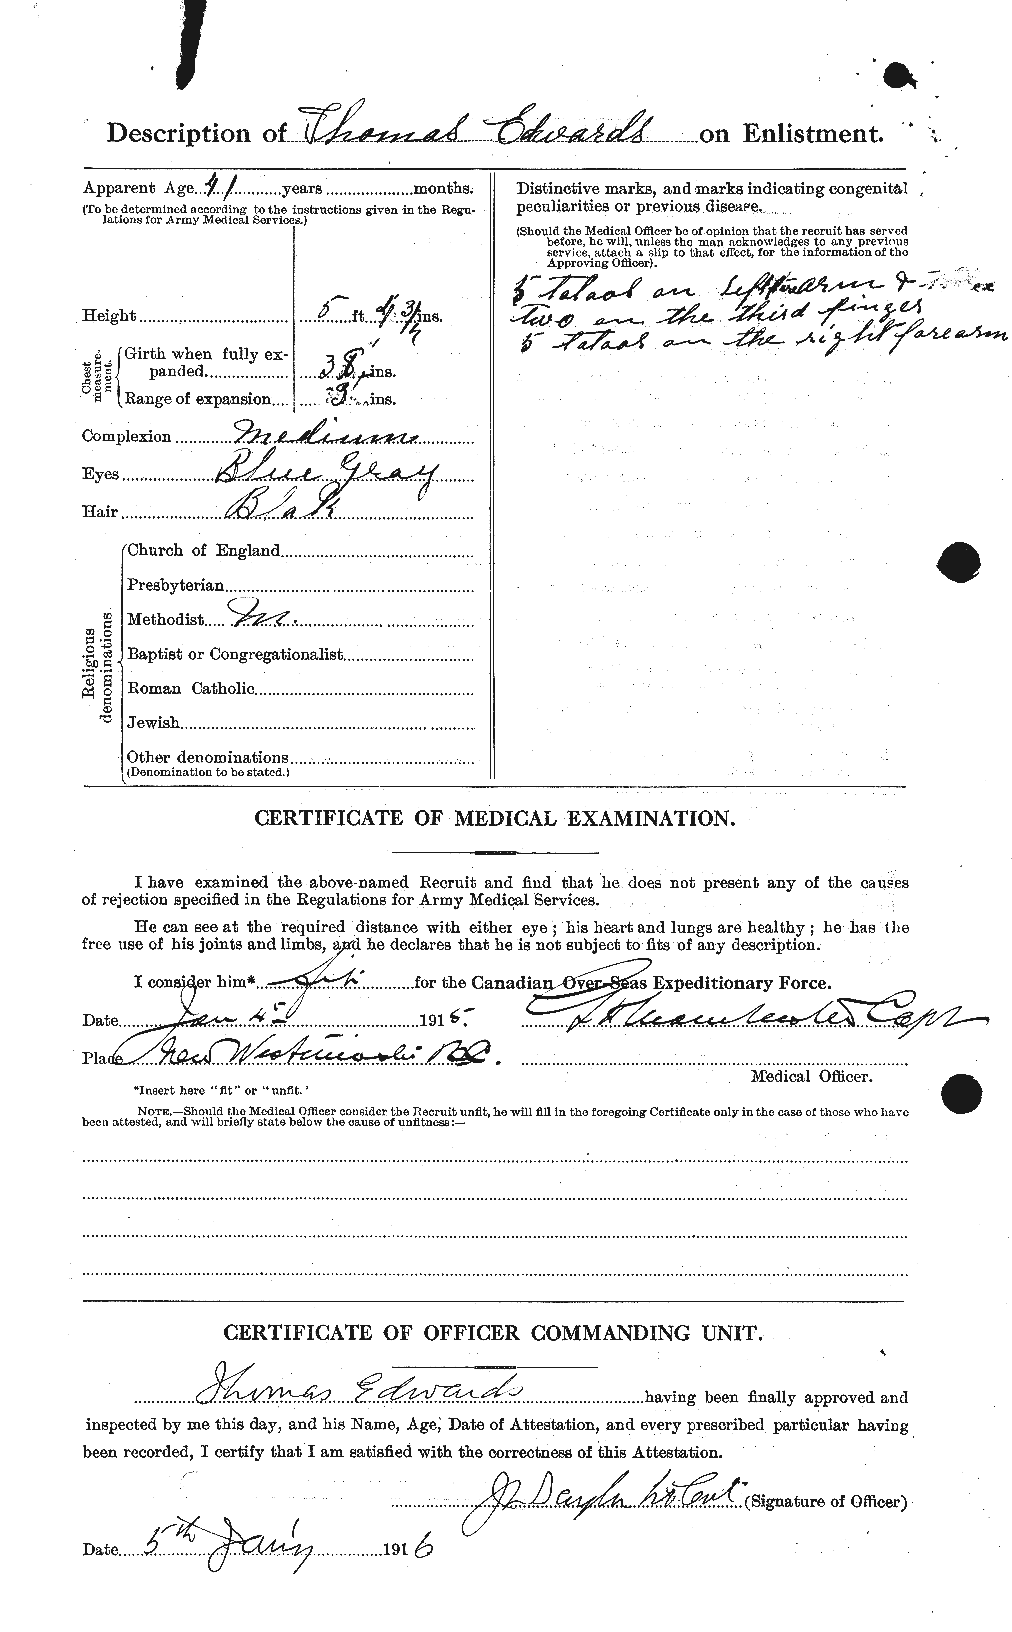 Dossiers du Personnel de la Première Guerre mondiale - CEC 310338b